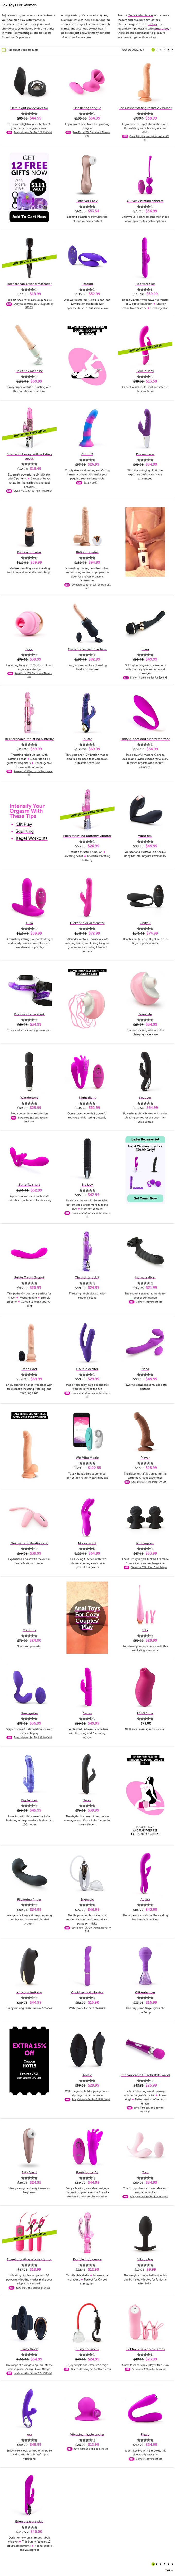 Best sex toys for Women. Female sex toys